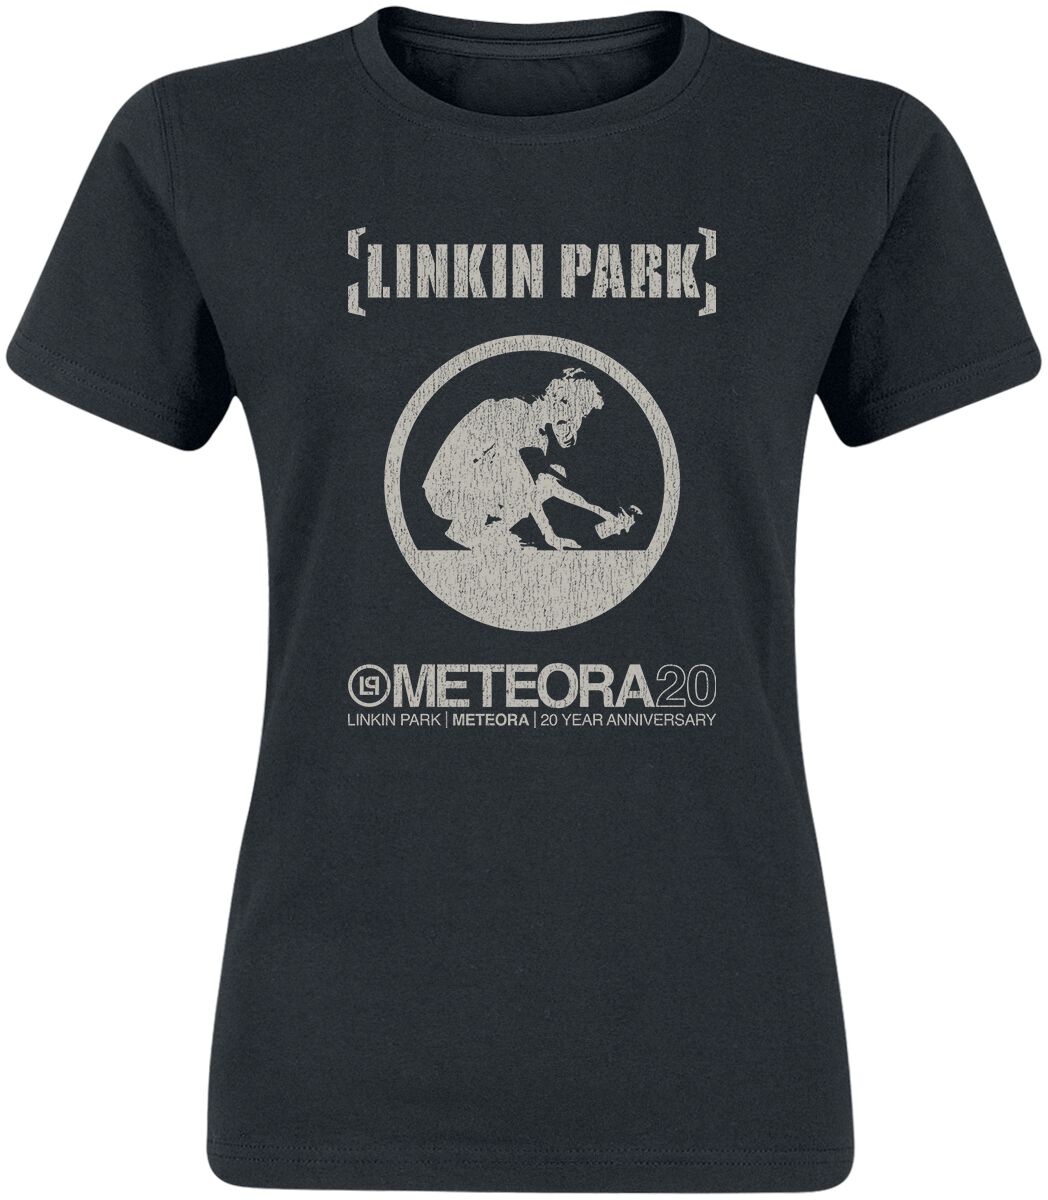 T-Shirt Manches courtes de Linkin Park - Meteora 20th Anniversary - S à XXL - pour Femme - noir